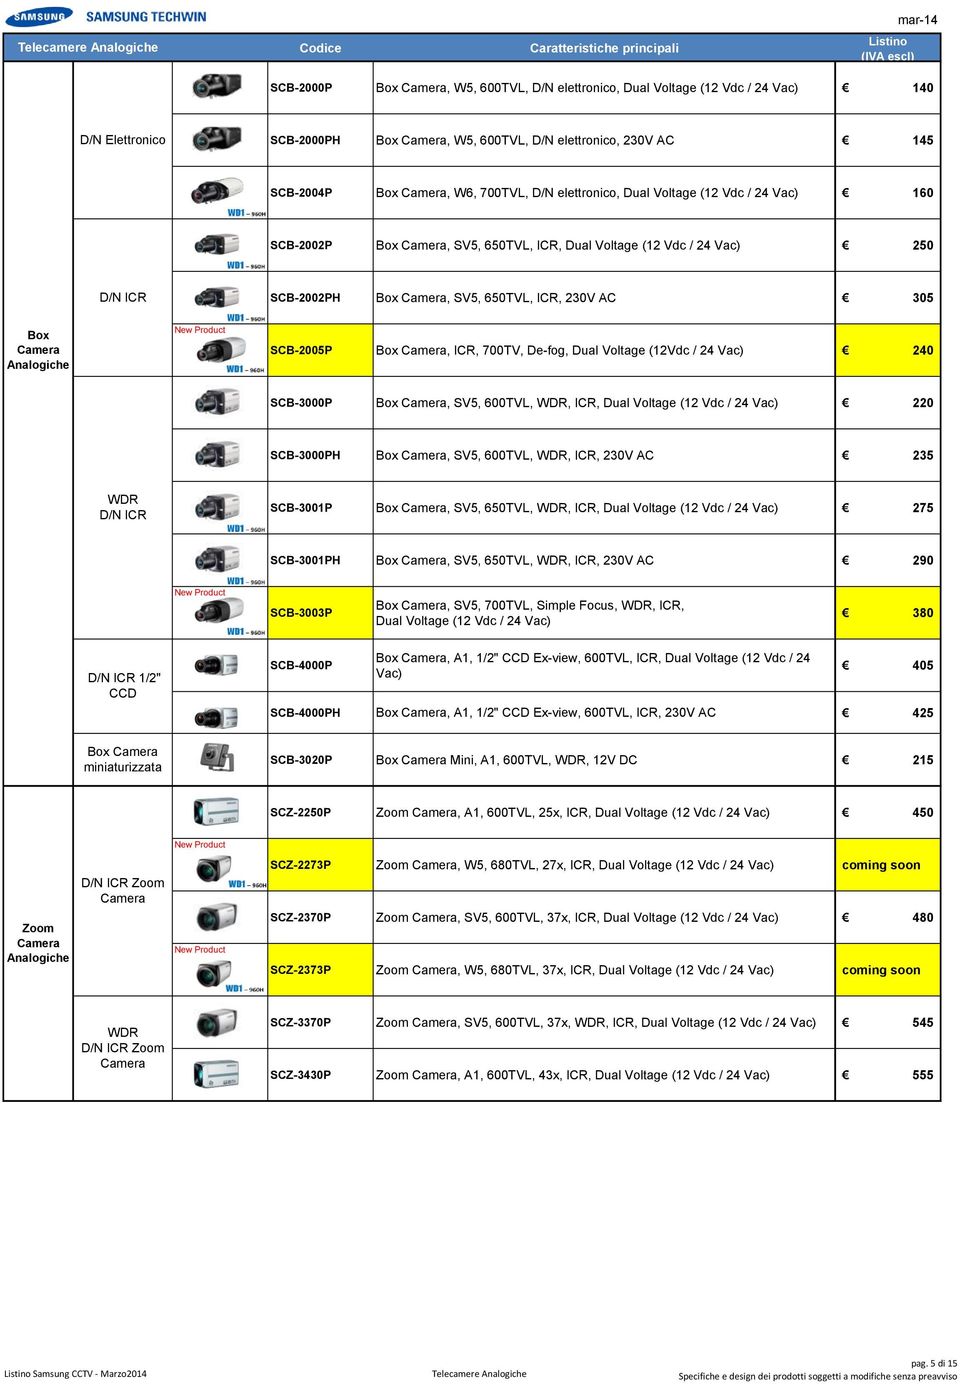 De-fog, Dual Voltage (12Vdc / 24 Vac) 240 SCB-3000P Box, SV5, 600TVL, WDR, ICR, Dual Voltage (12 Vdc / 24 Vac) 220 SCB-3000PH Box, SV5, 600TVL, WDR, ICR, 230V AC 235 WDR D/N ICR SCB-3001P Box, SV5,